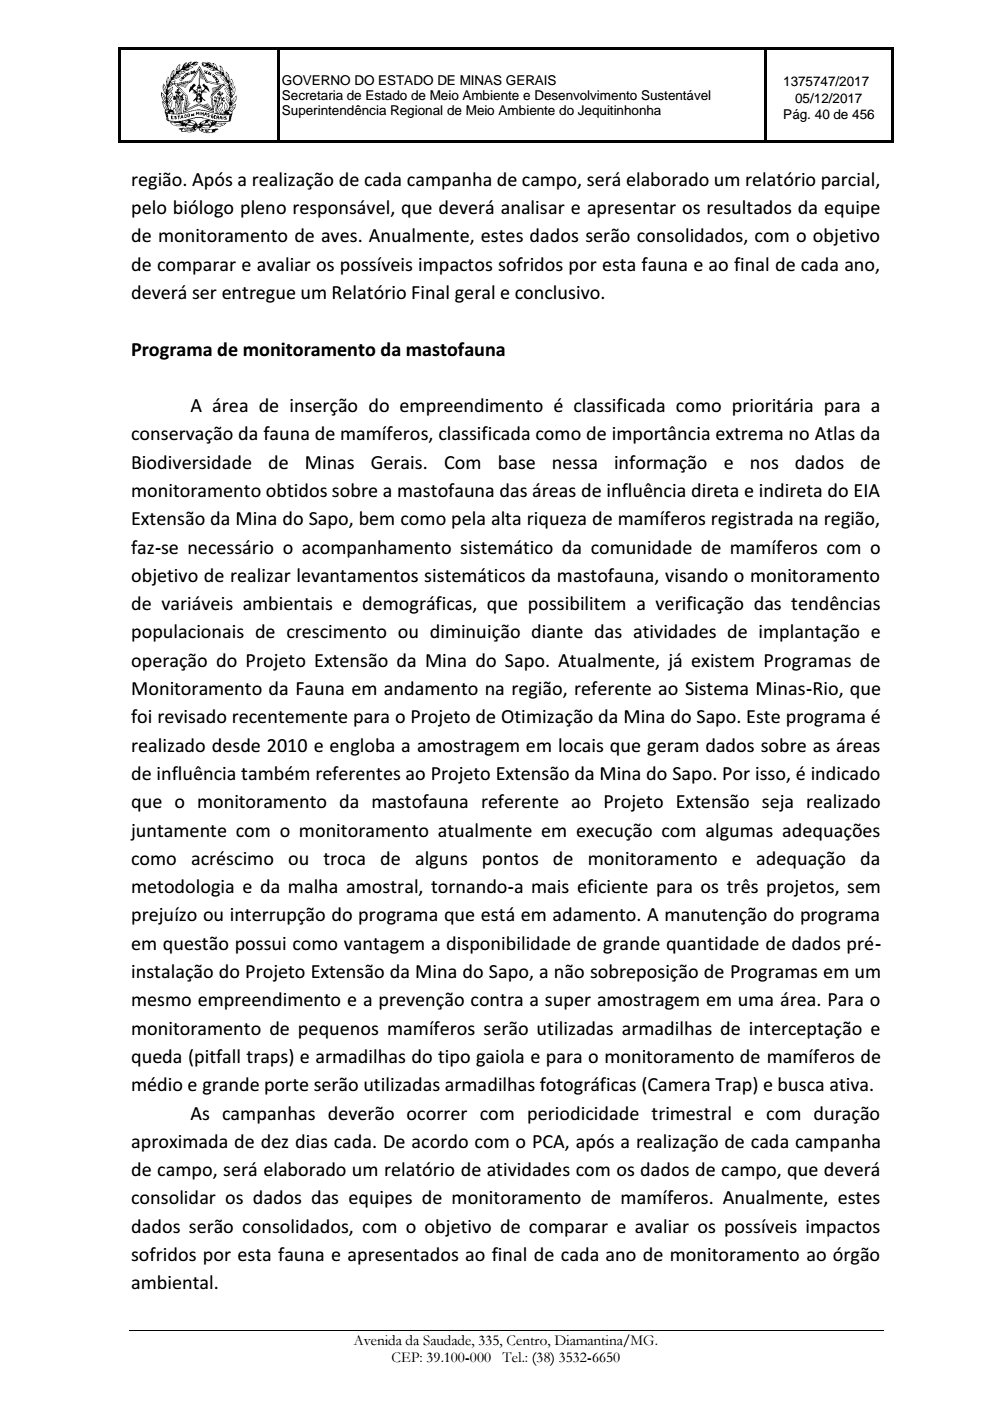 Page 40 from Parecer único da Secretaria de estado de Meio Ambiente e Desenvolvimento Sustentável (SEMAD)